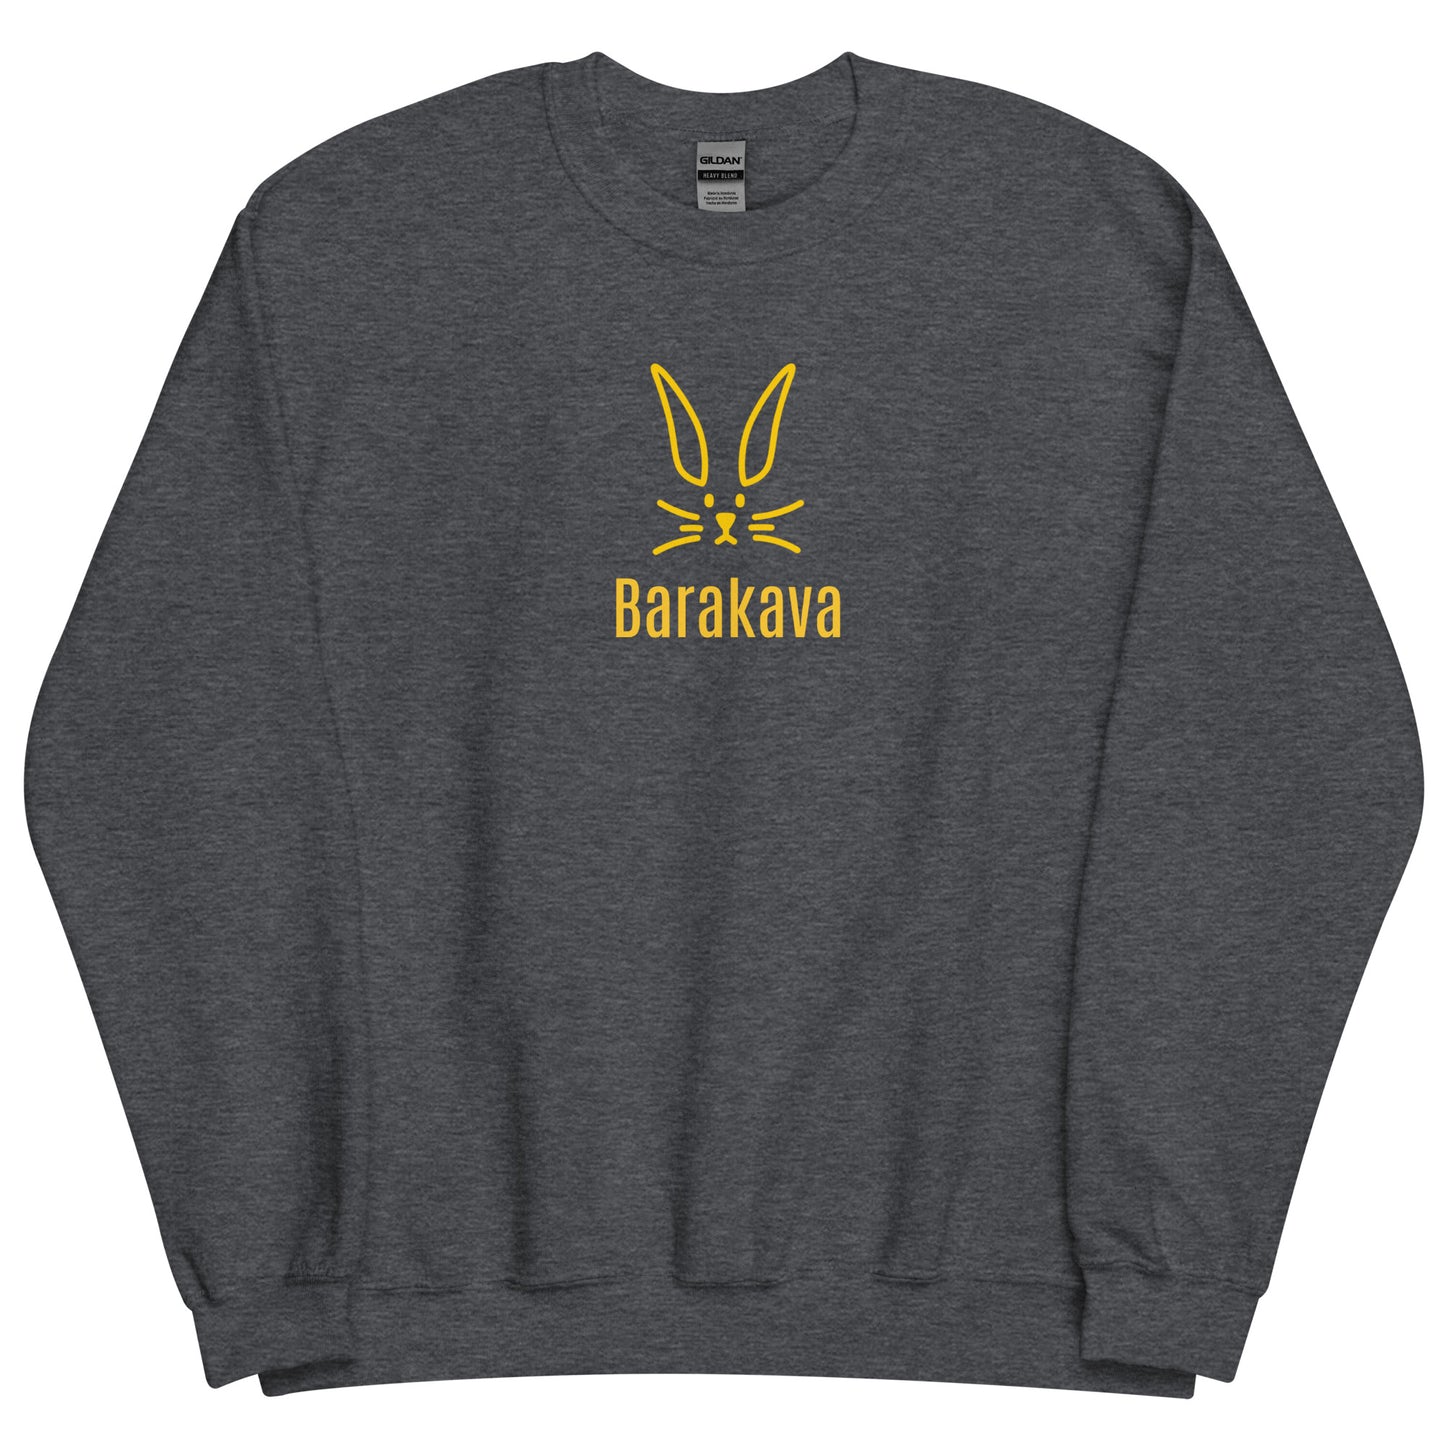 Grey Rabitt Design Sweatshirt